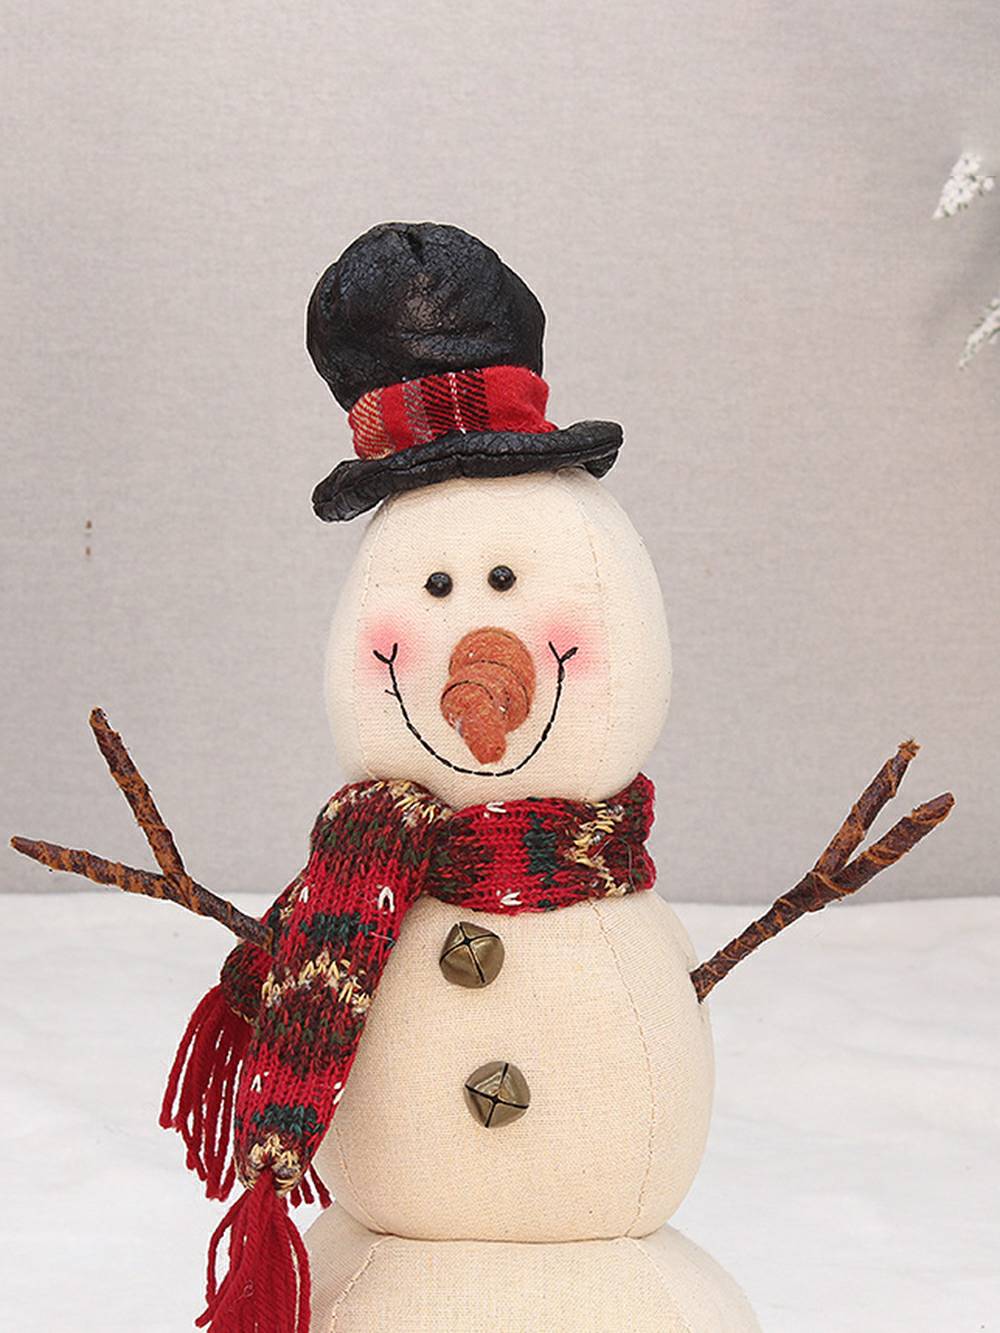 Snowman Doll Dekoratioun Fënster Poppen Ornamenter Chrëschtdag Handwierk